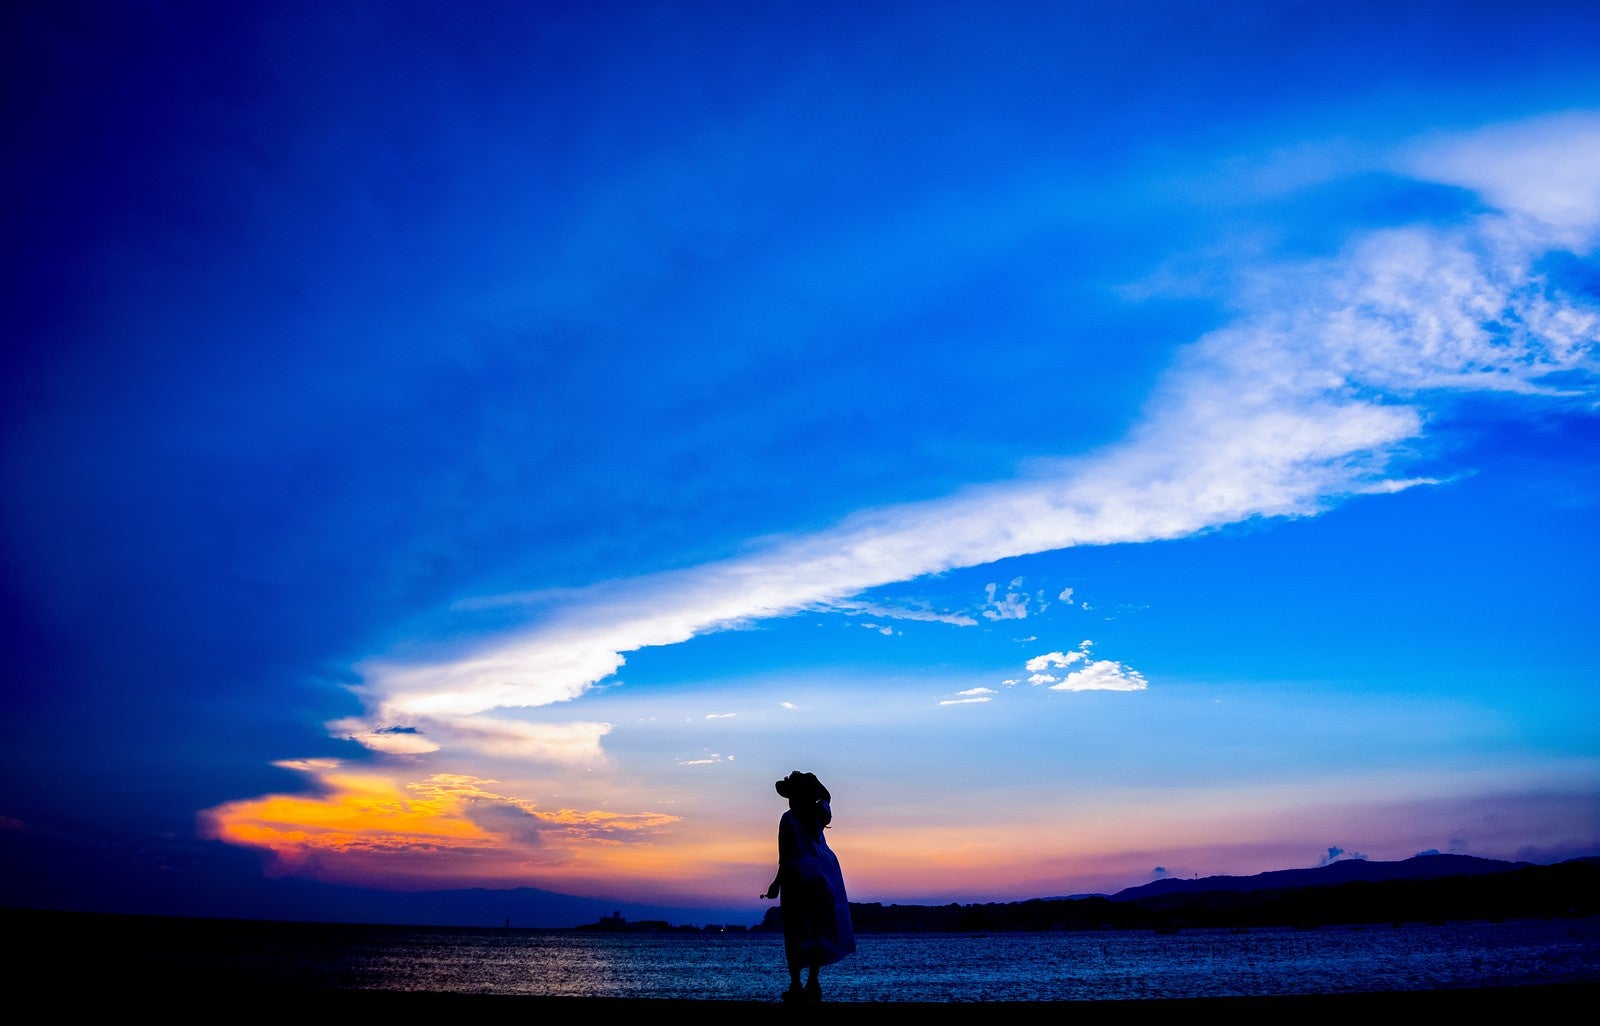 「トワイライトの海岸を歩く帽子をかぶった女性のシルエット」の写真